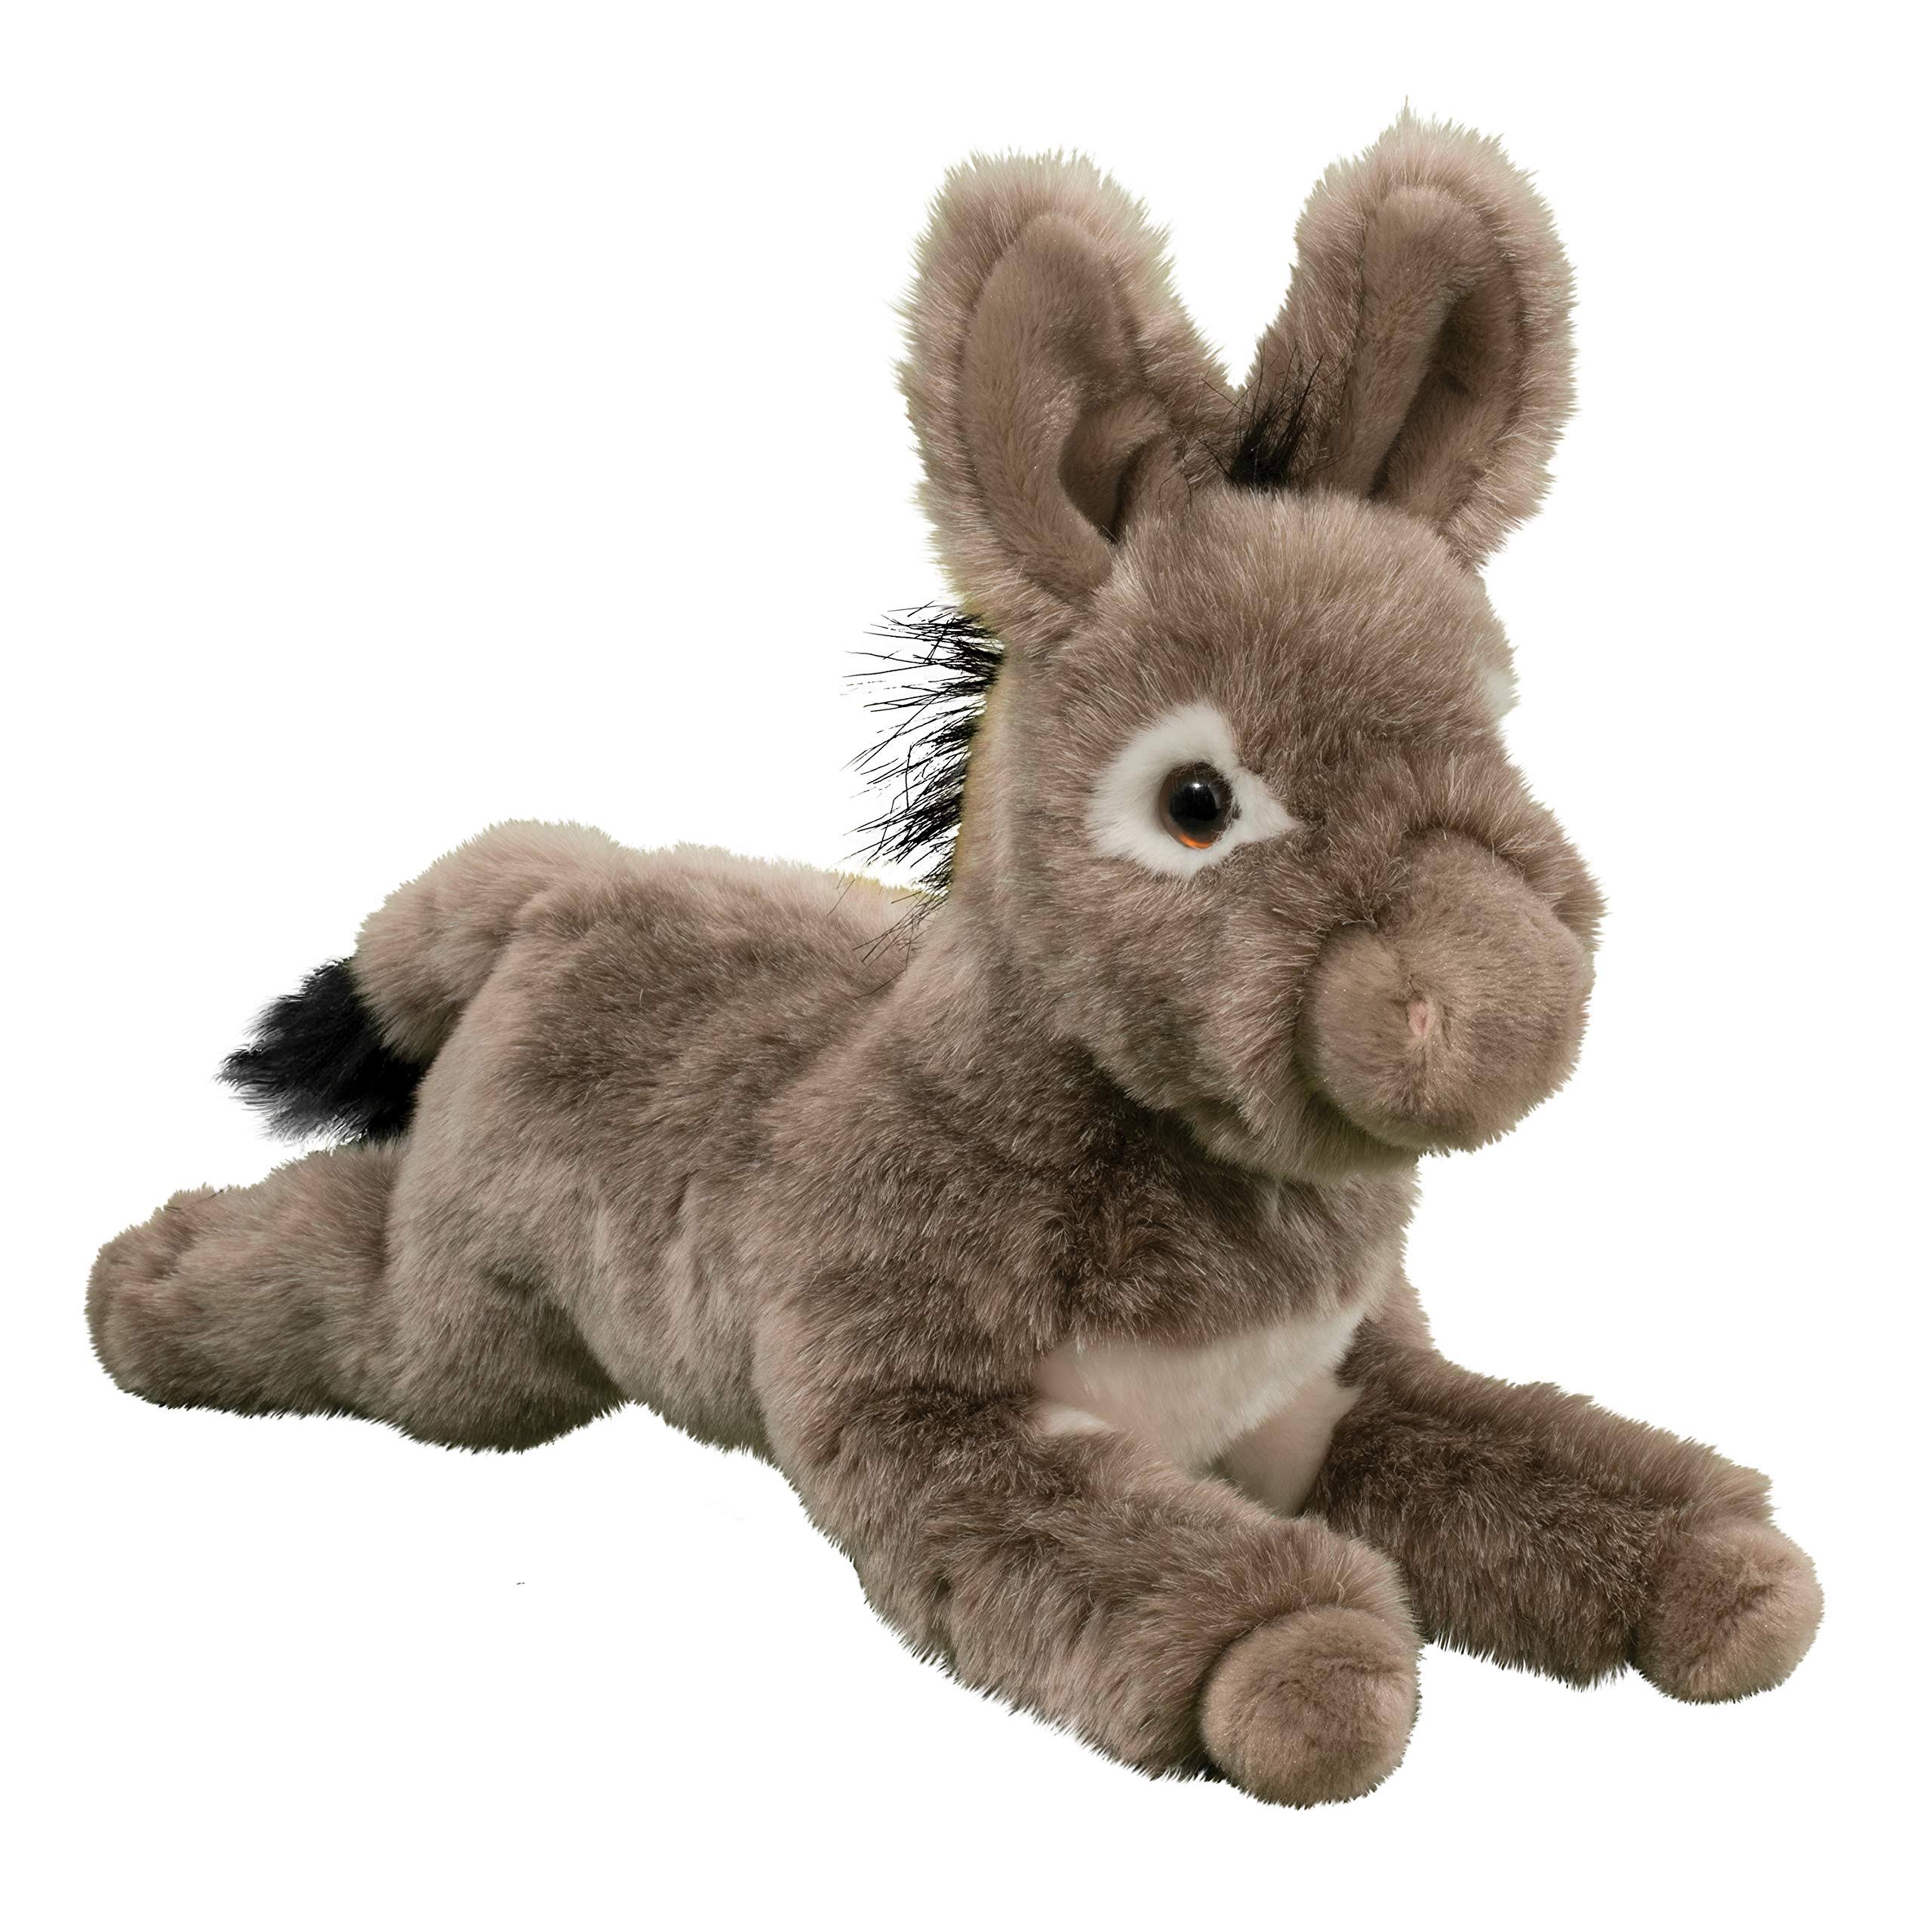 Douglas Cuddle Toy Plush Rupert Donkey